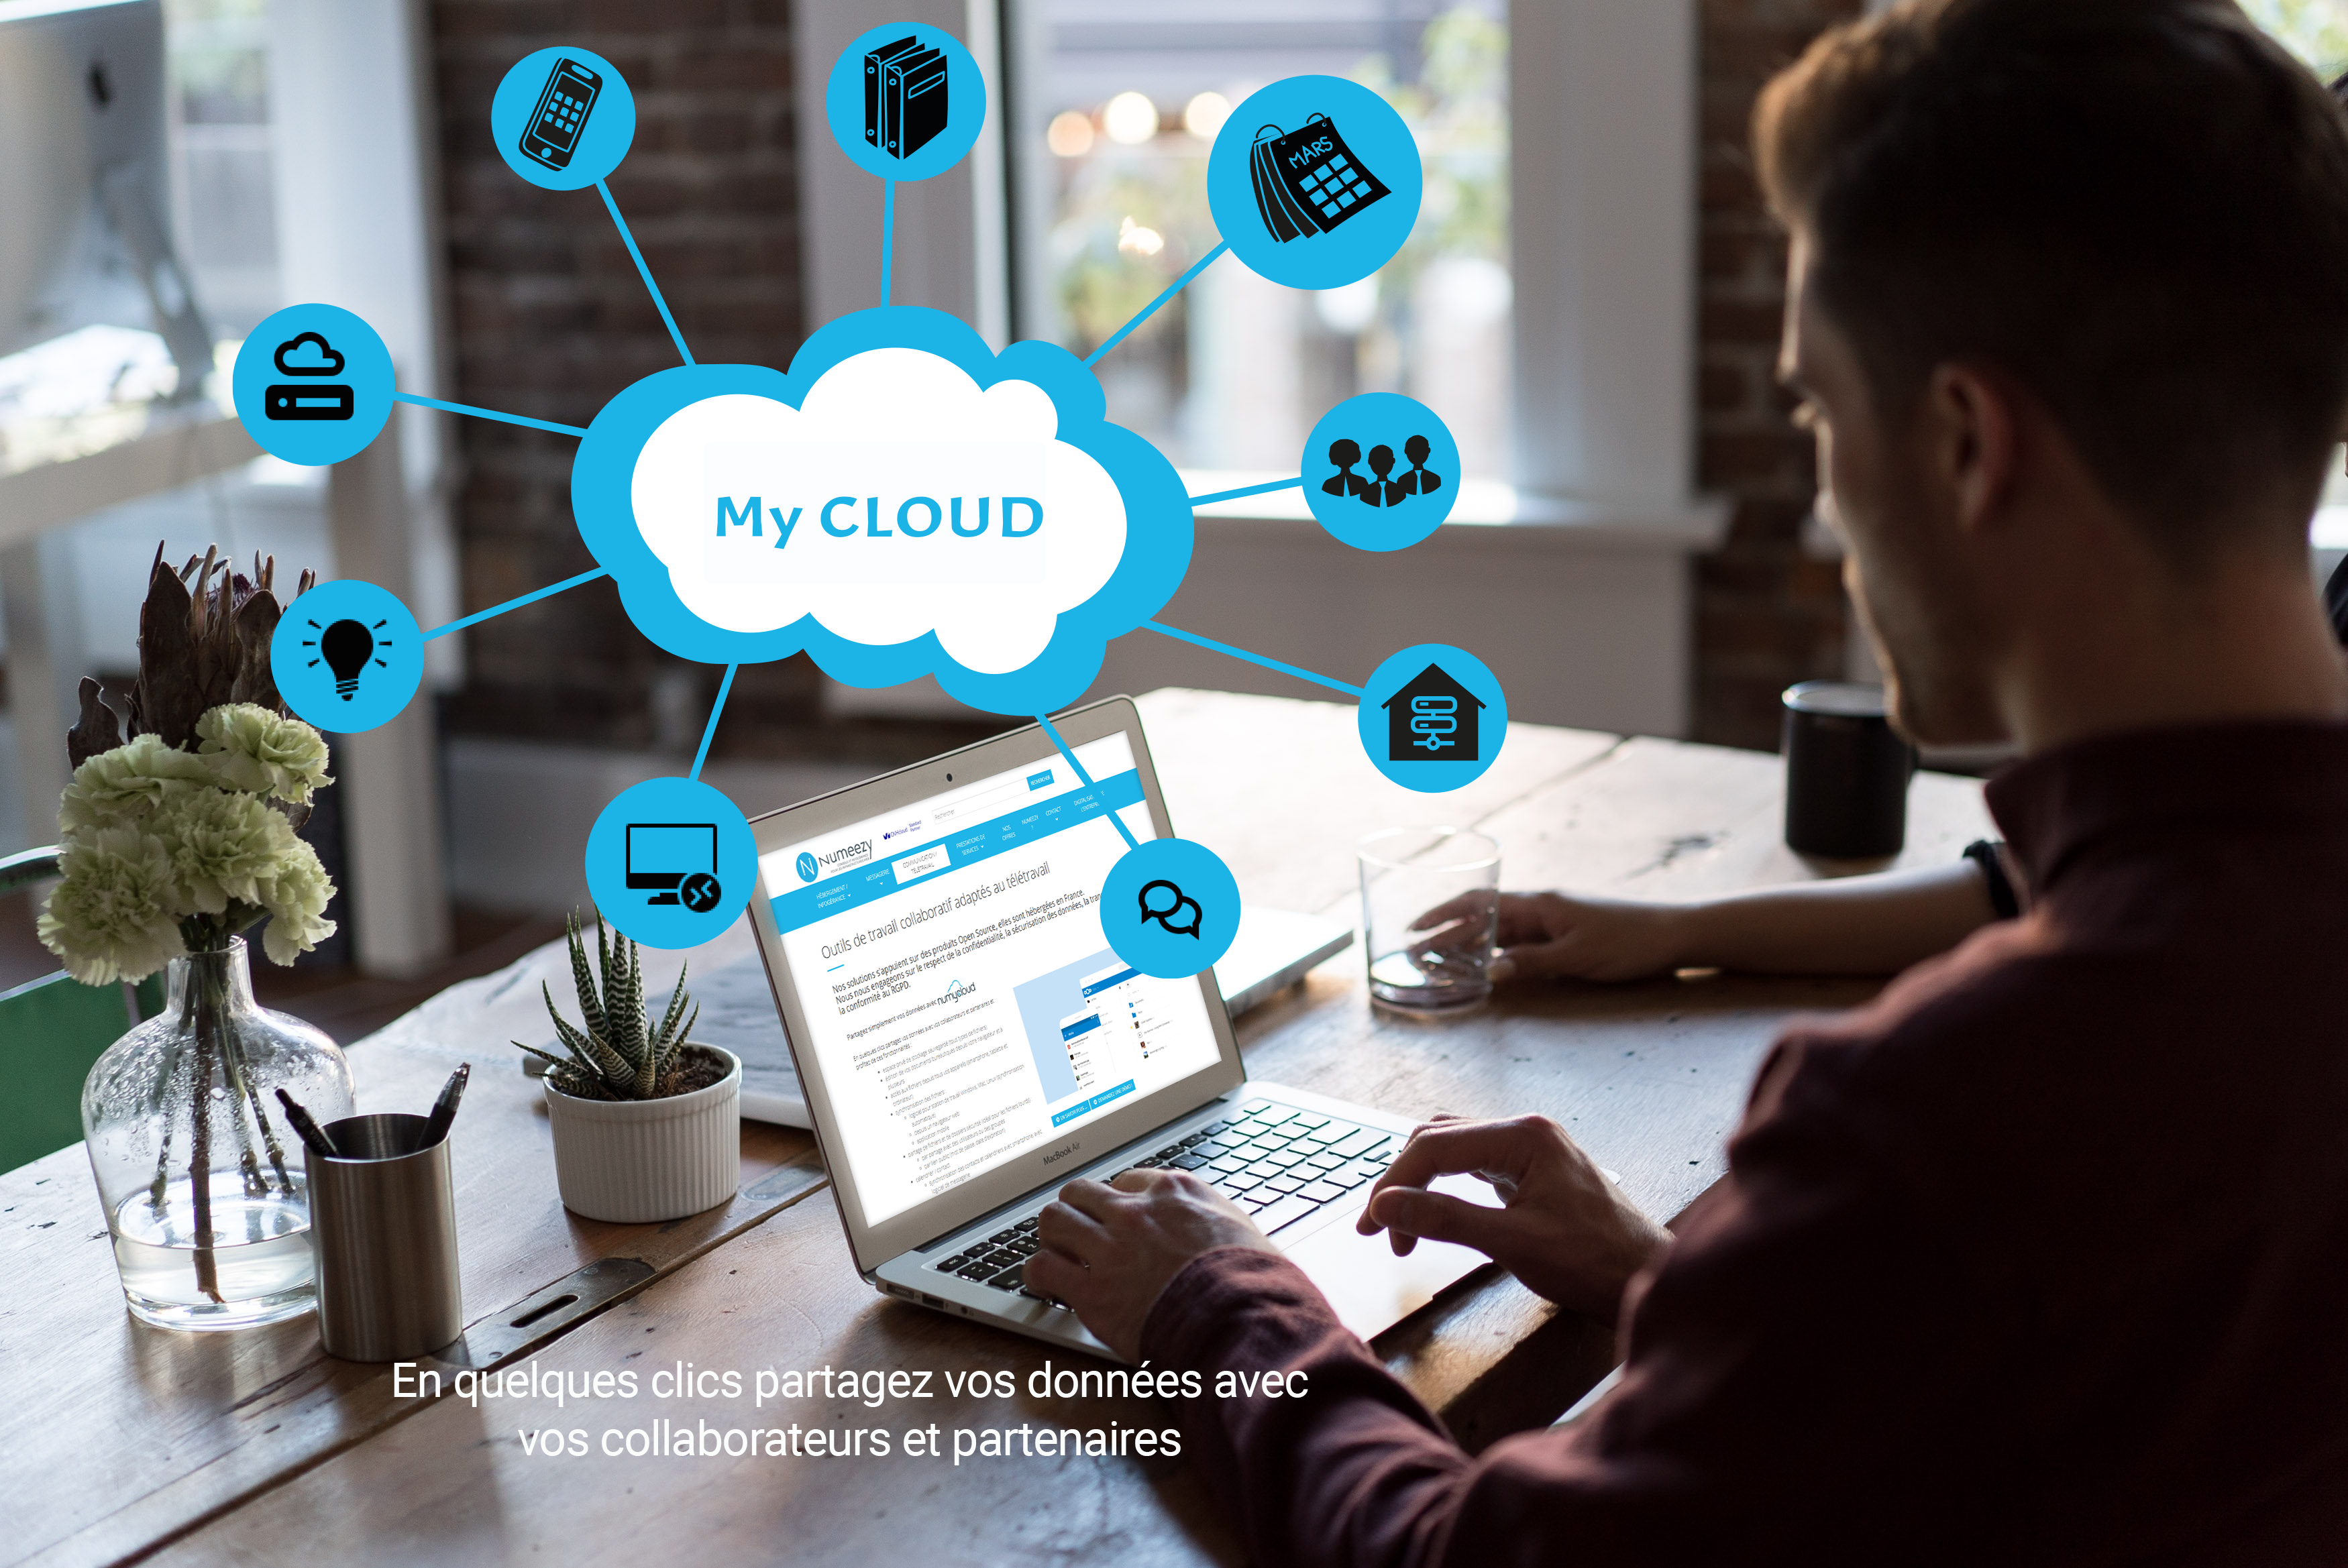 Visuel représentant un nuage entouré d'icônes pour vendre une solution de cloud